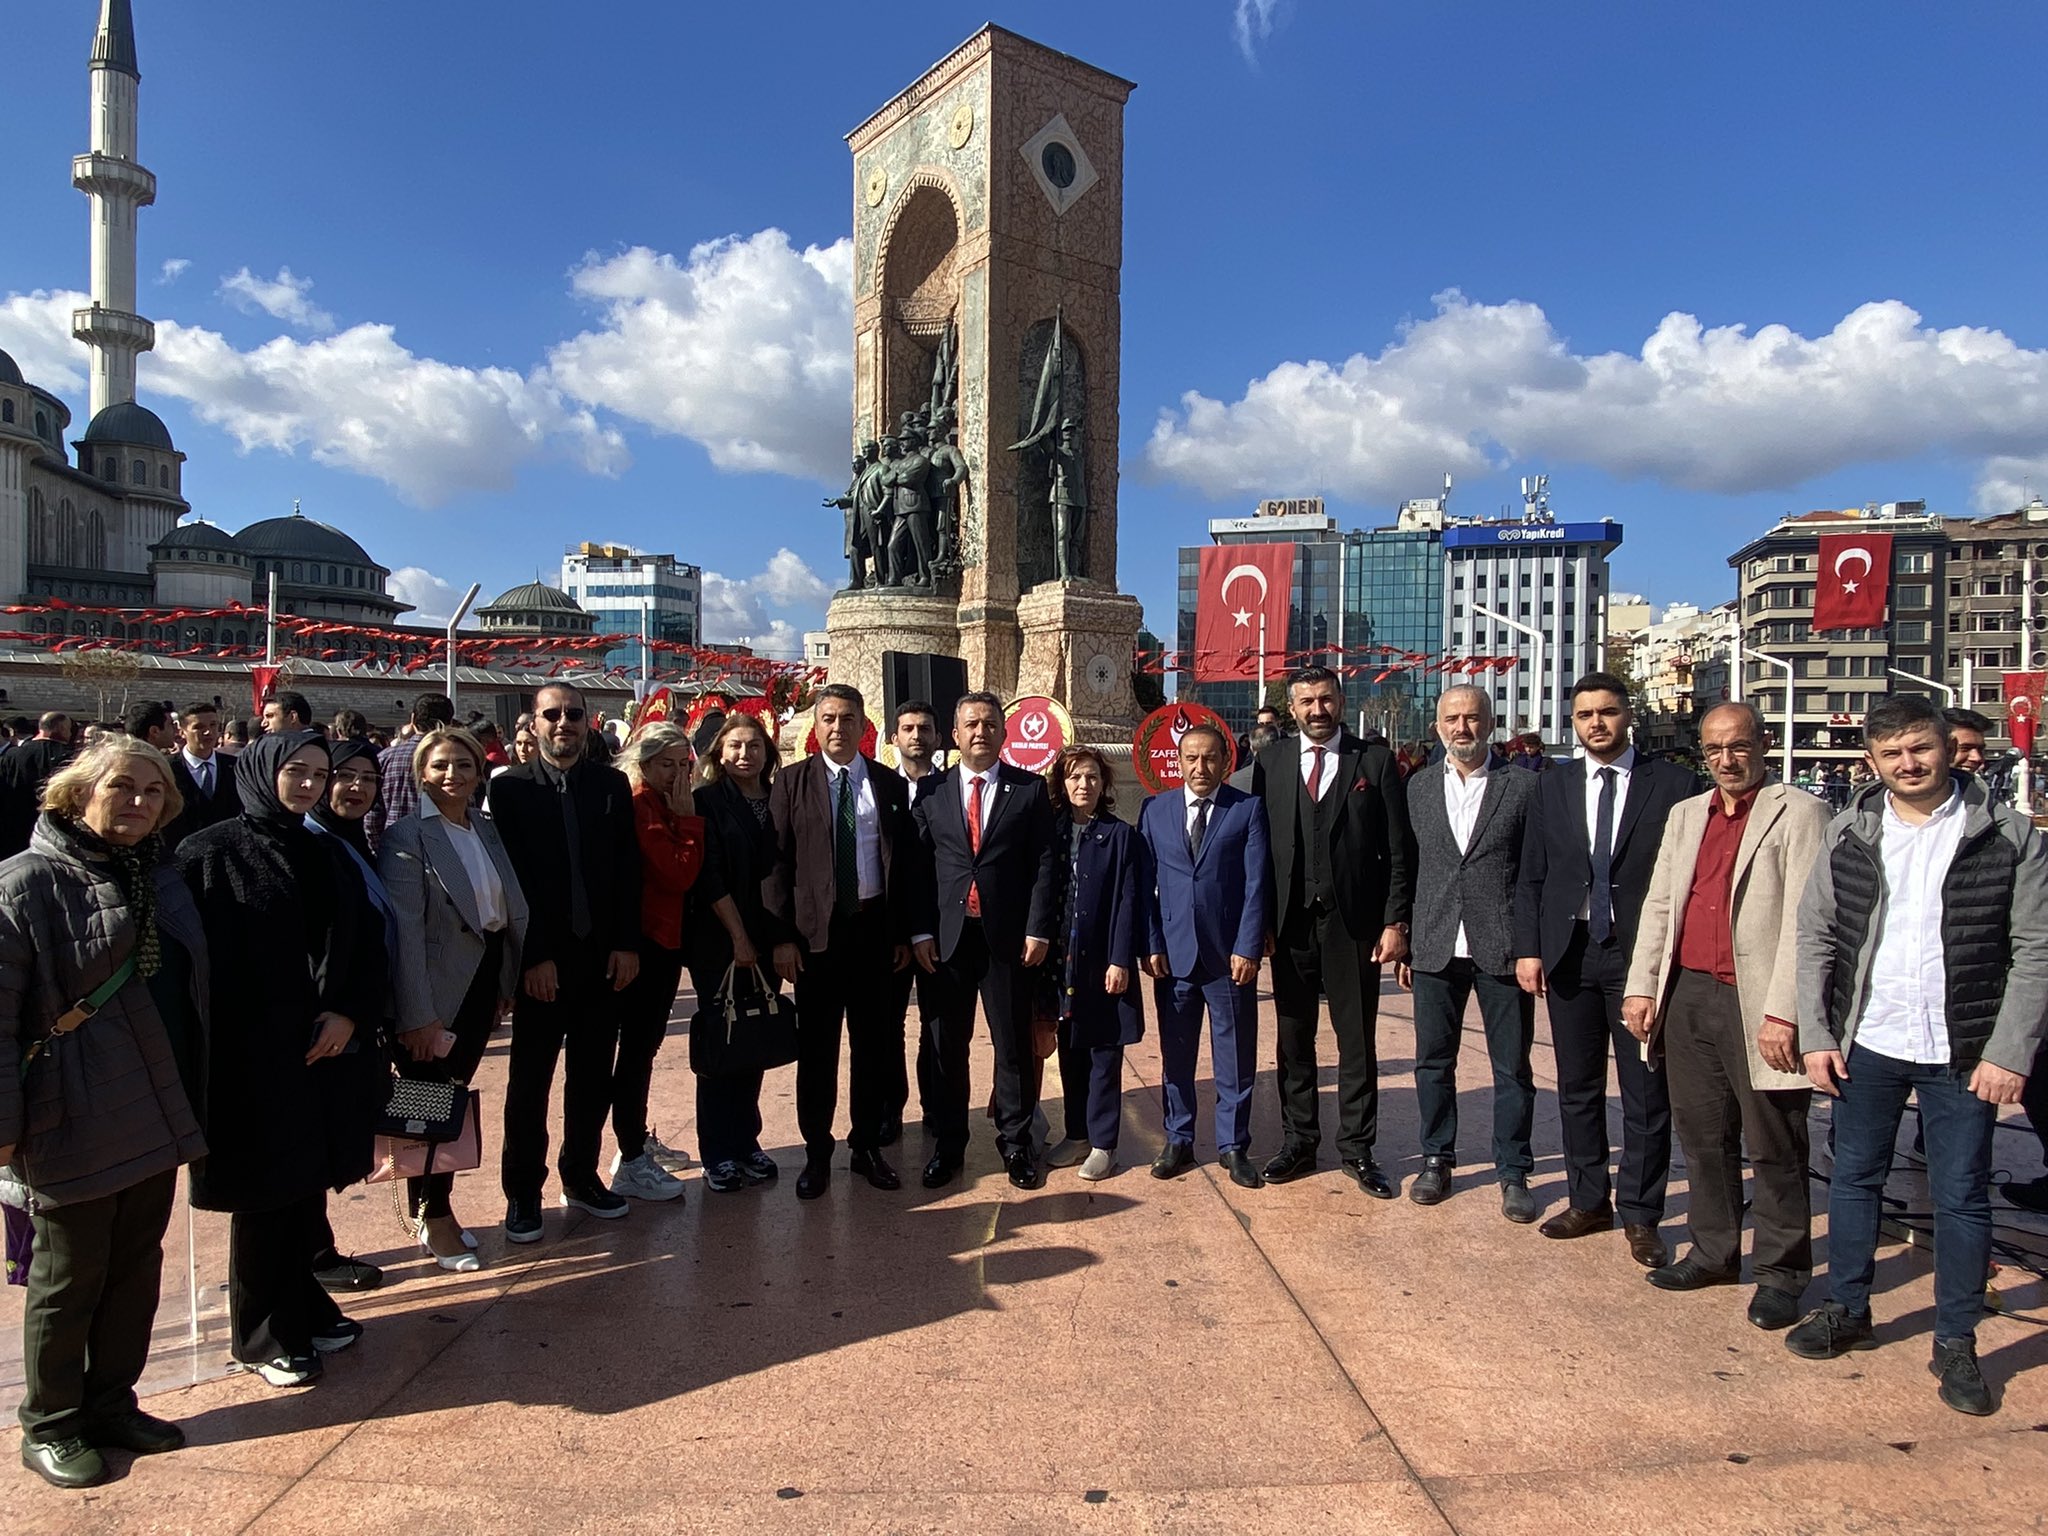 İl Başkanımız İsa Mesih Şahin, il ve ilçe teşkilat mensuplarımız ile birlikte 29 Ekim Cumhuriyet Bayramı kutlamaları kapsamında Taksim Cumhuriyet Anıtı'nda düzenlenen Çelenk Sunma Töreni'ne katıldı.